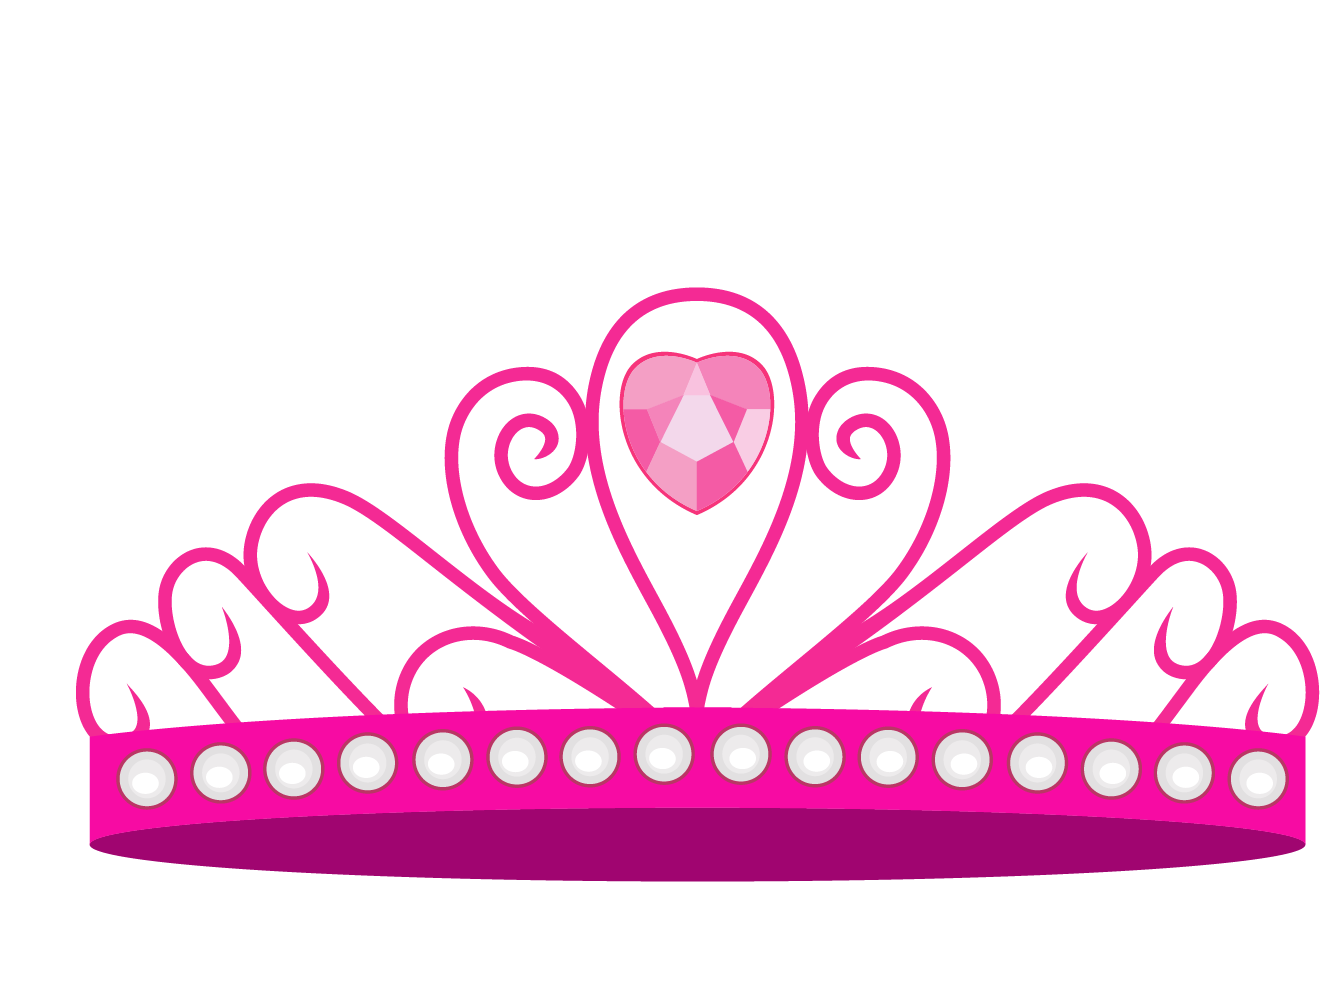 Crown Princess Euclidean vector - Cartoon princess crown vector ...